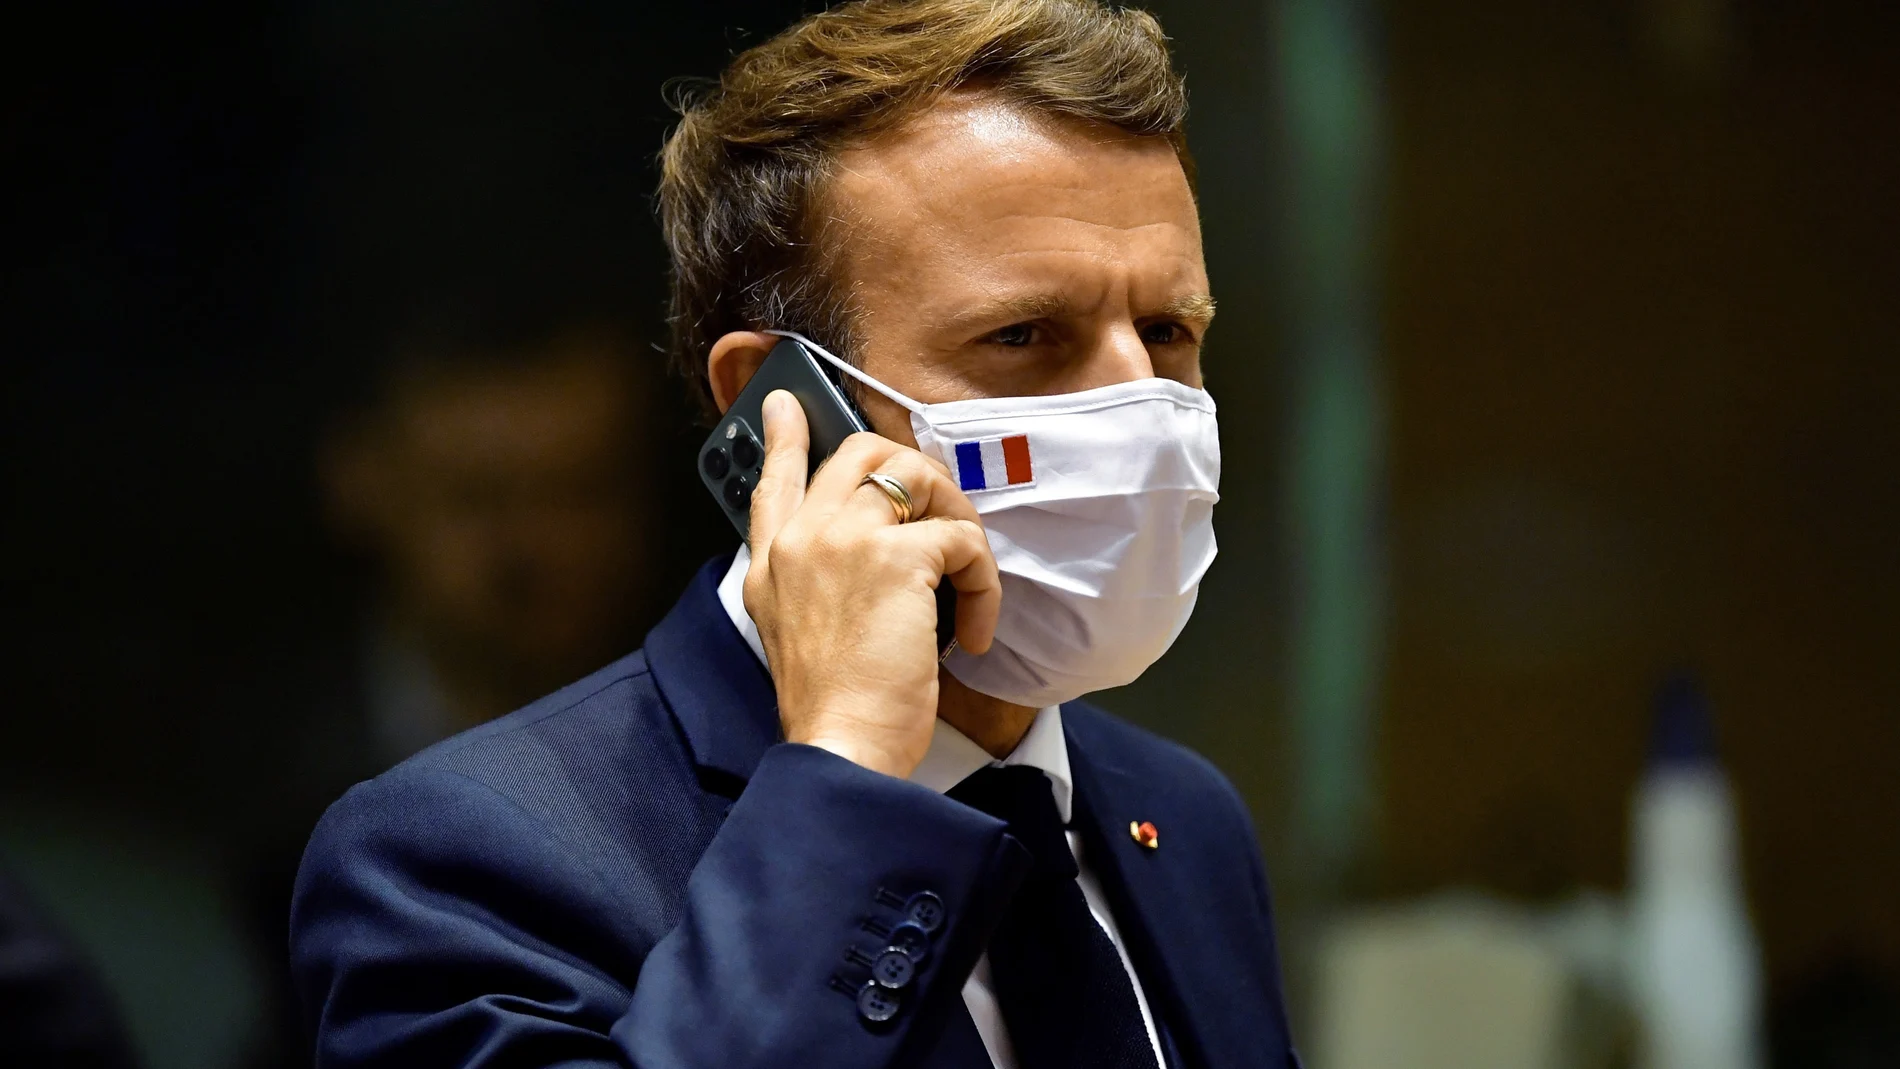 La información no precisa si el teléfono de Macron pudo haber sido finalmente espiado por el program israelí